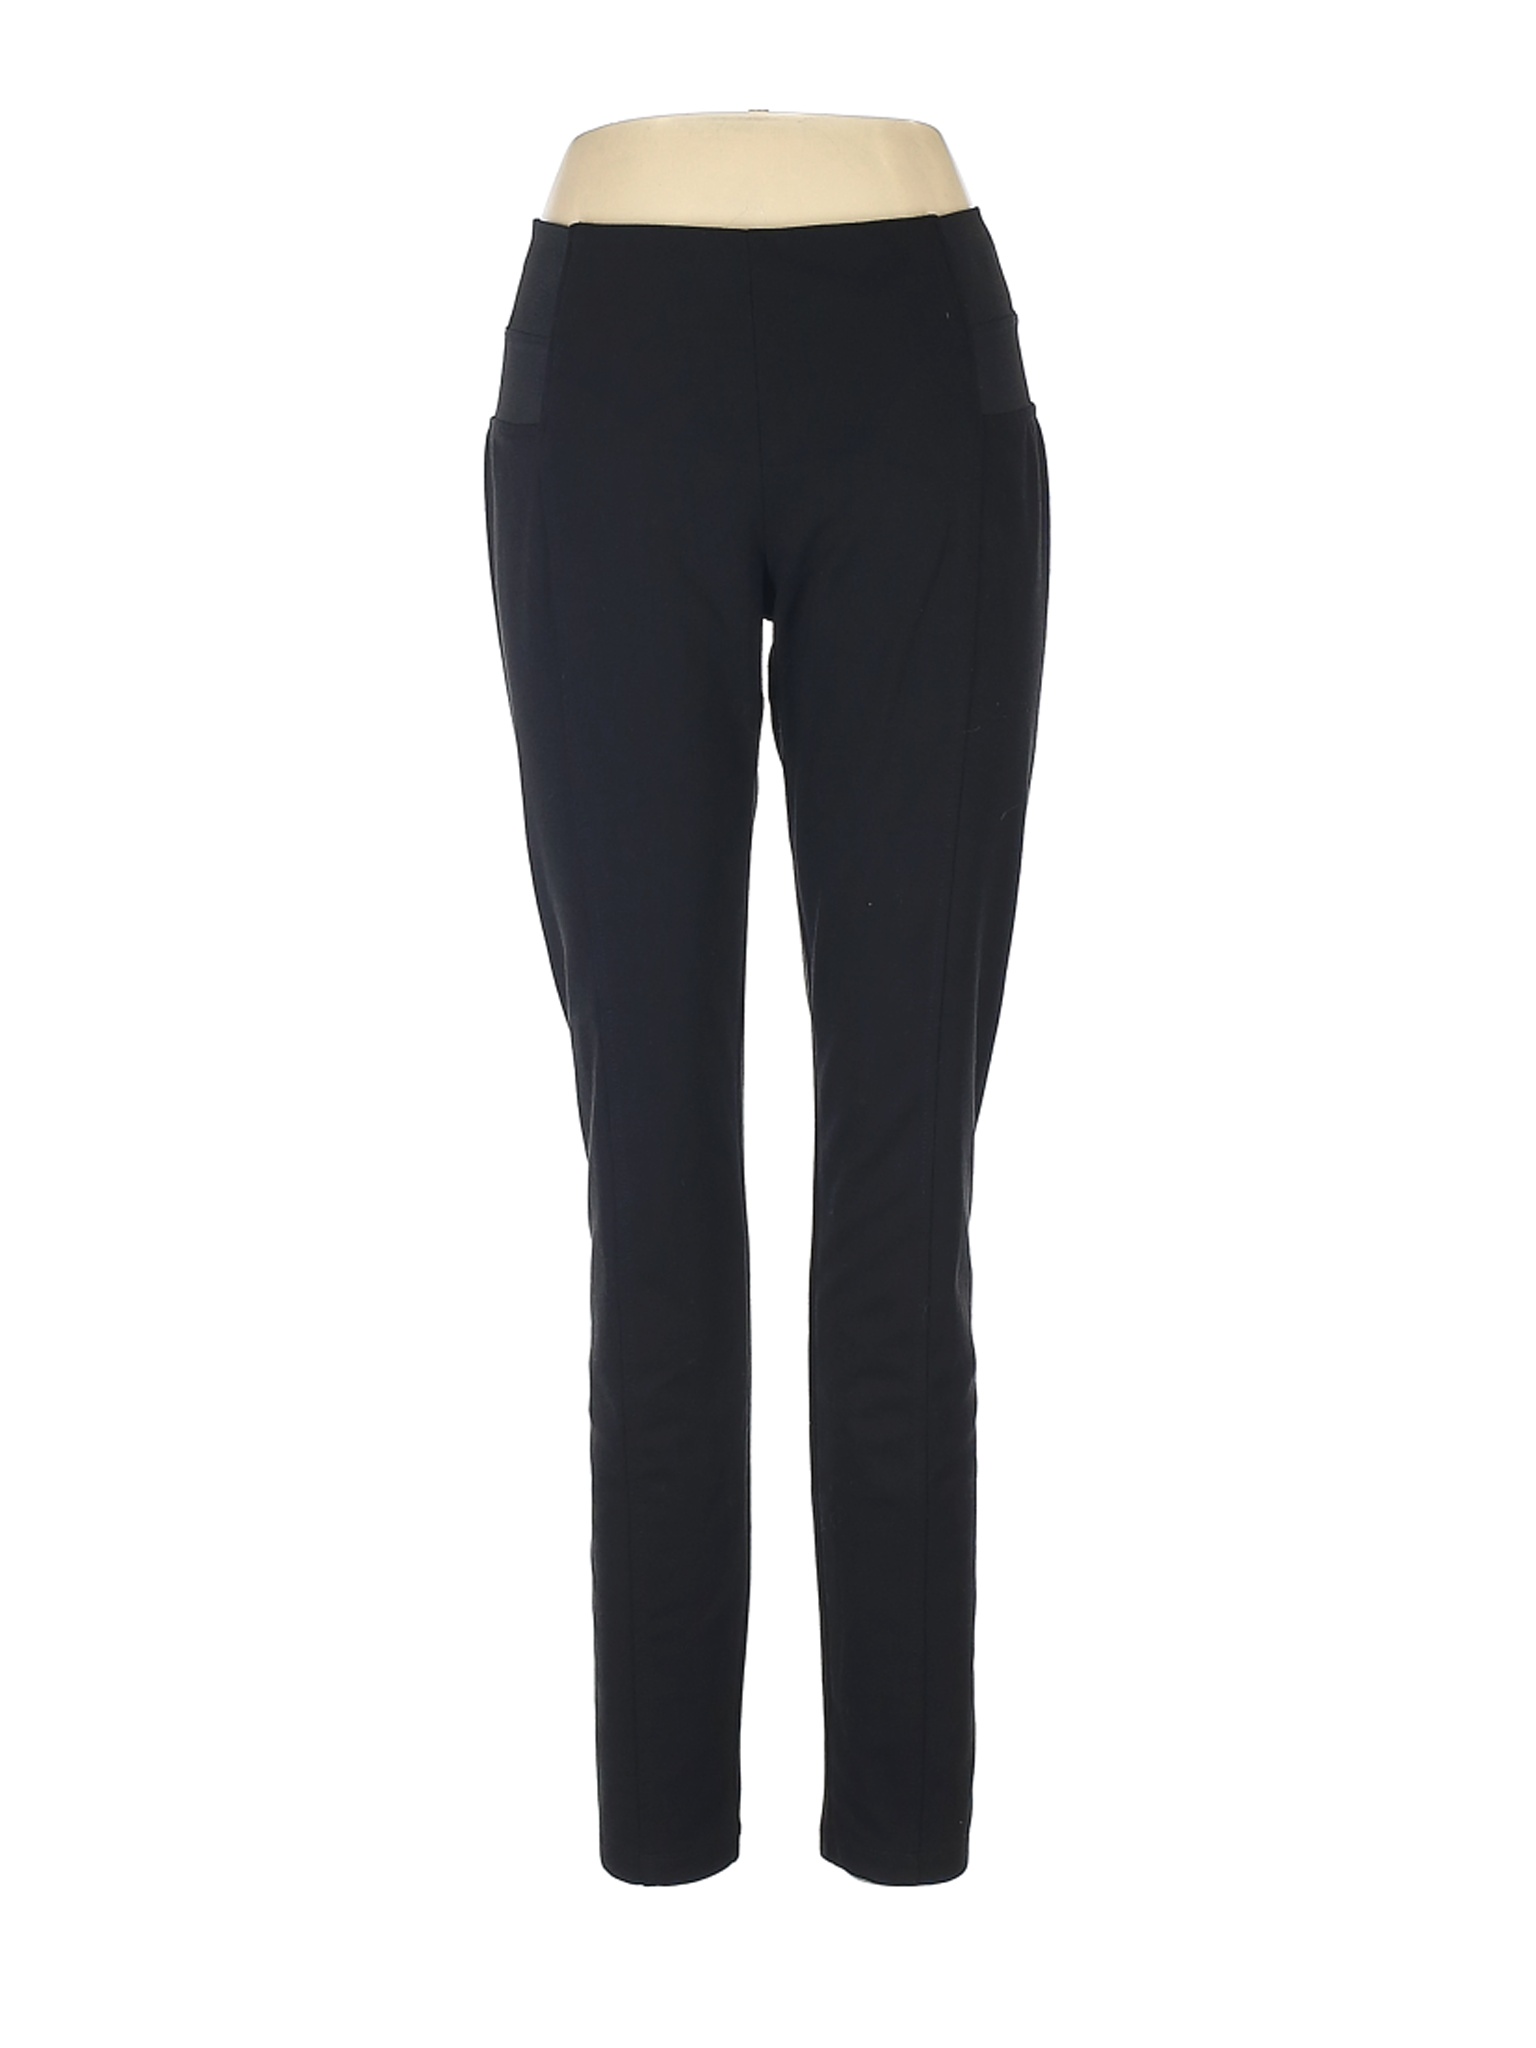 Simply Vera Vera Wang Women Black Casual Pants L | eBay